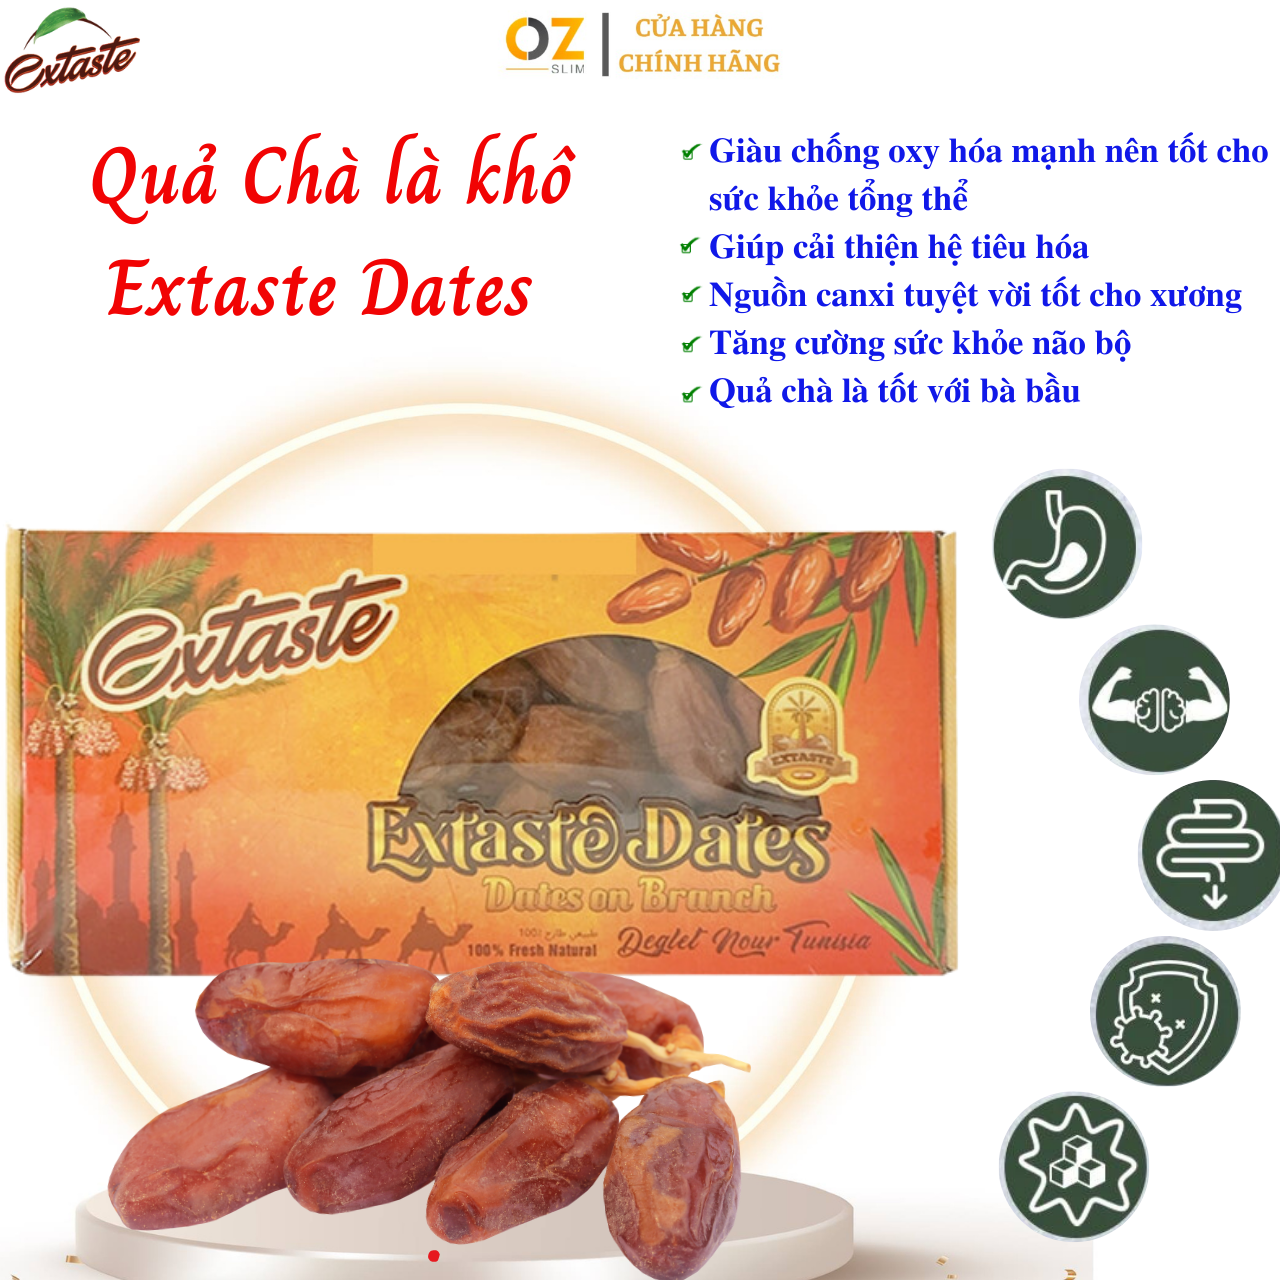 Chà là khô Extaste Dates Deglet Nour Tunisia chín tự nhiên, ngọt tự nhiên, mềm, dẻo mịn (500g/Hộp) - OZ Slim Store